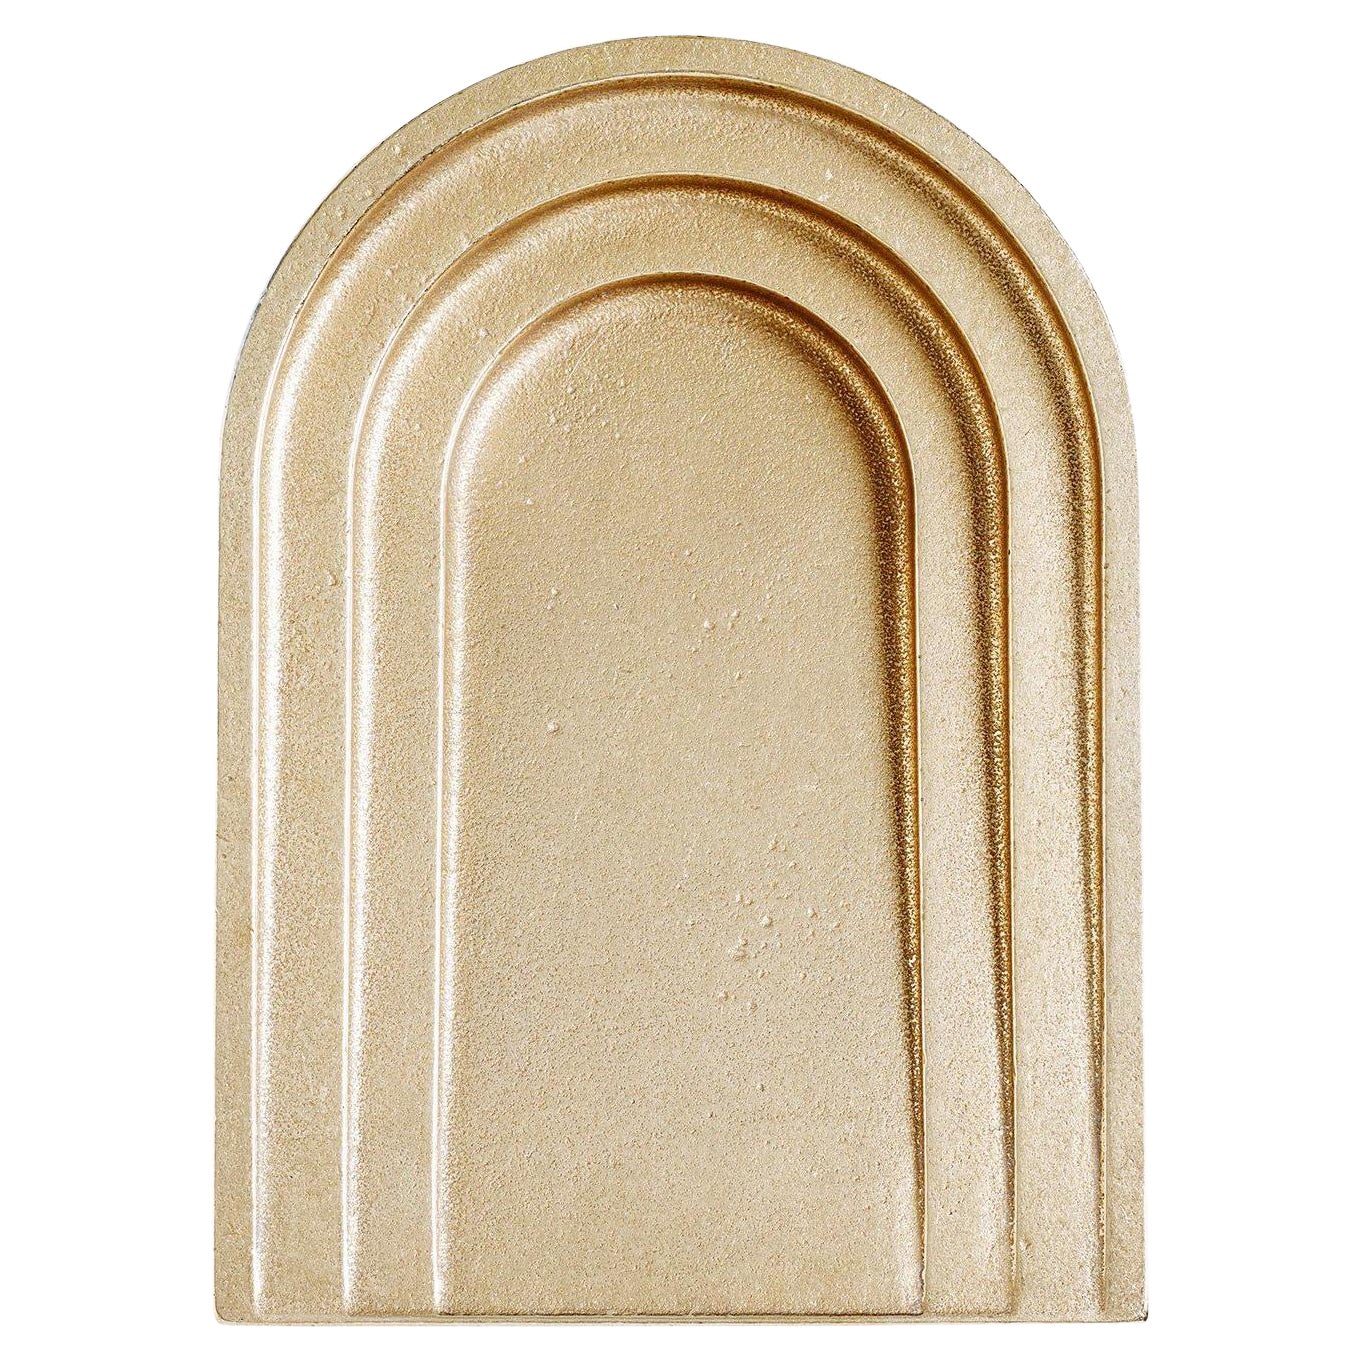 Thoronet-Schale aus polierter Bronze von Henry Wilson